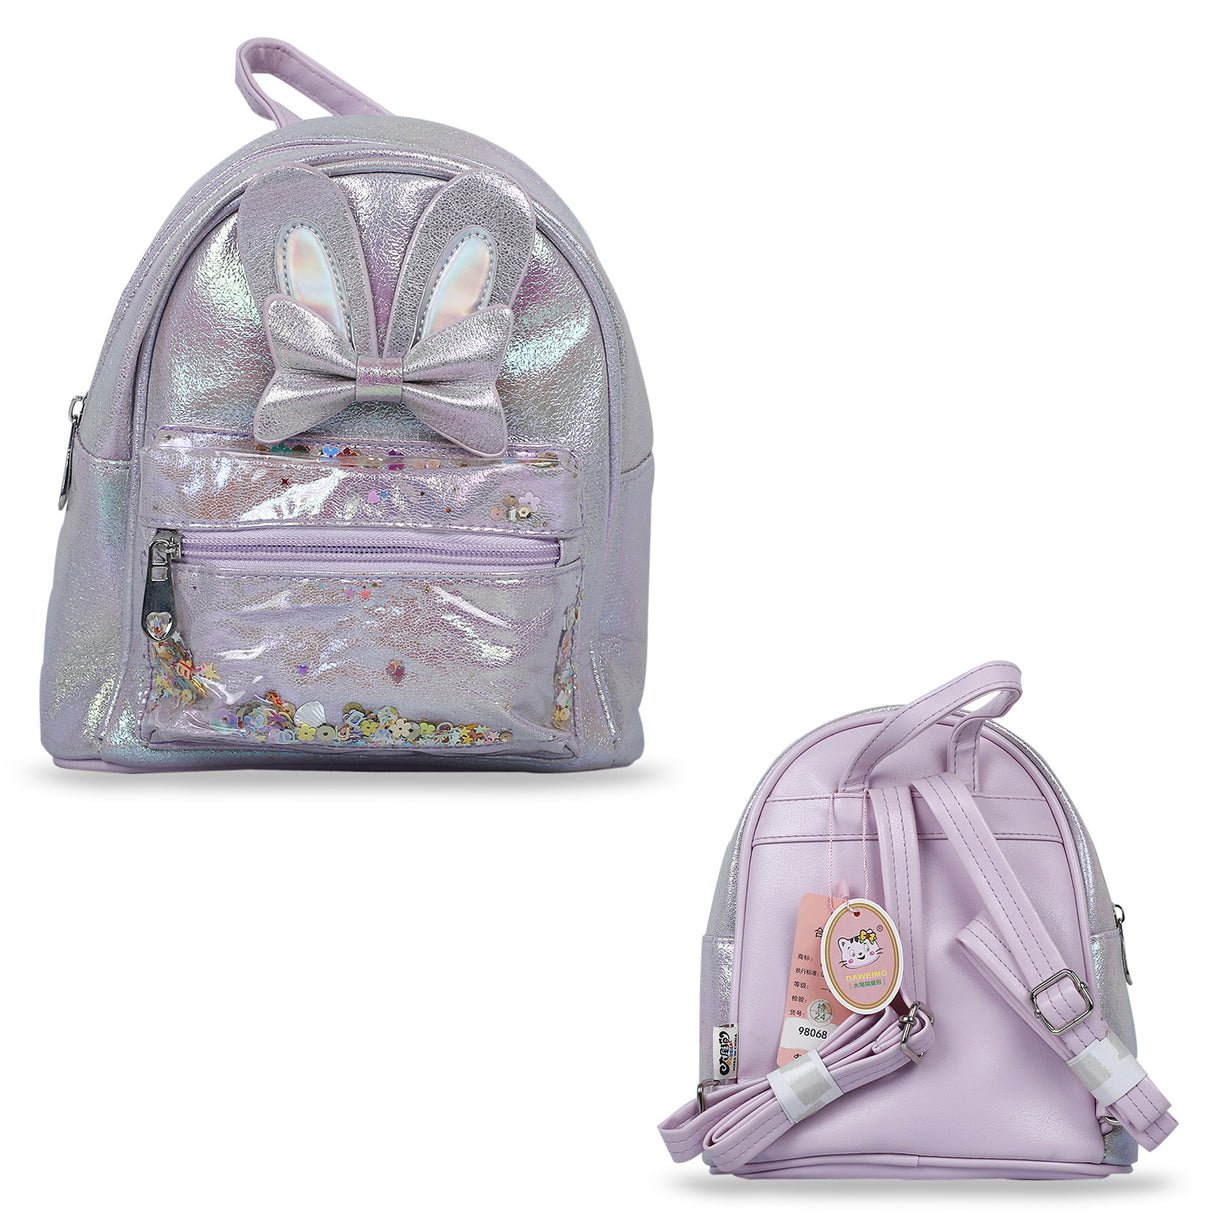 Premium Gittery Bow Girls Backpack Bag